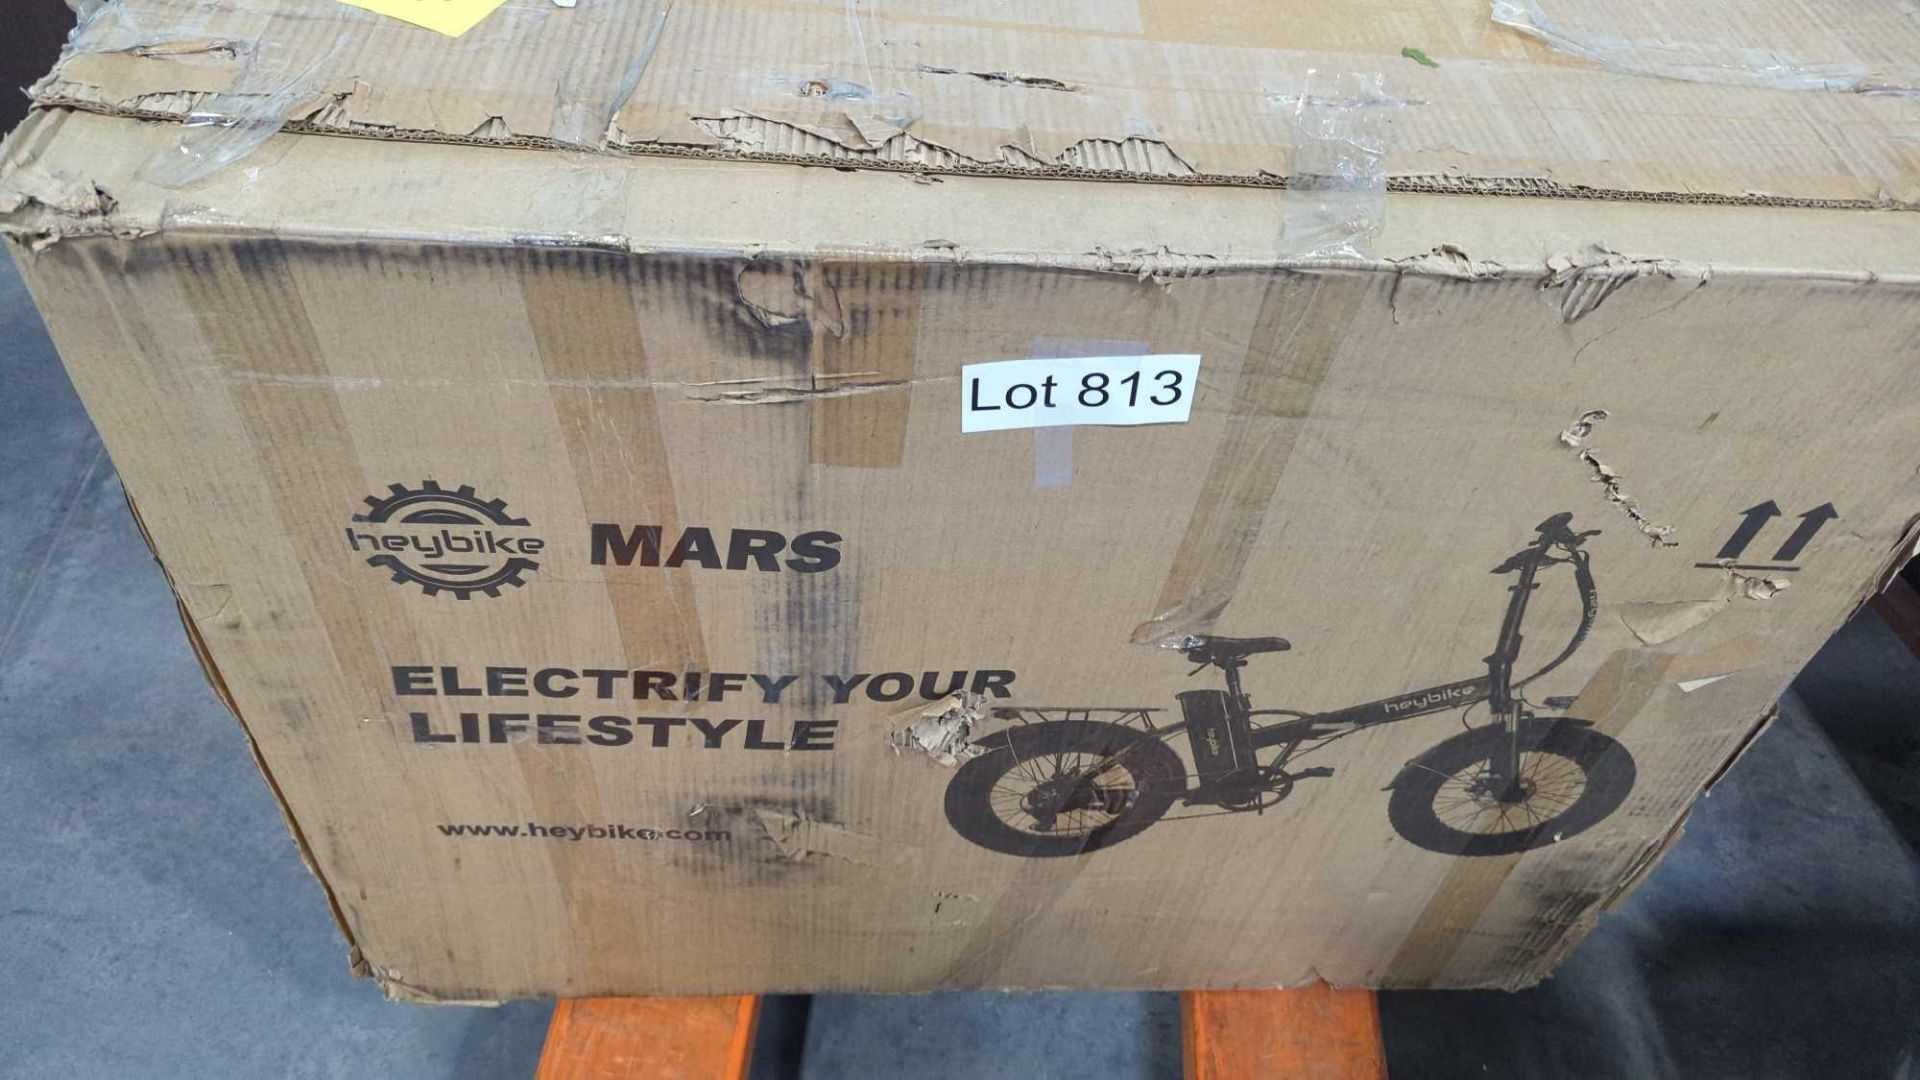 Electric Heybike Mars - Image 2 of 4